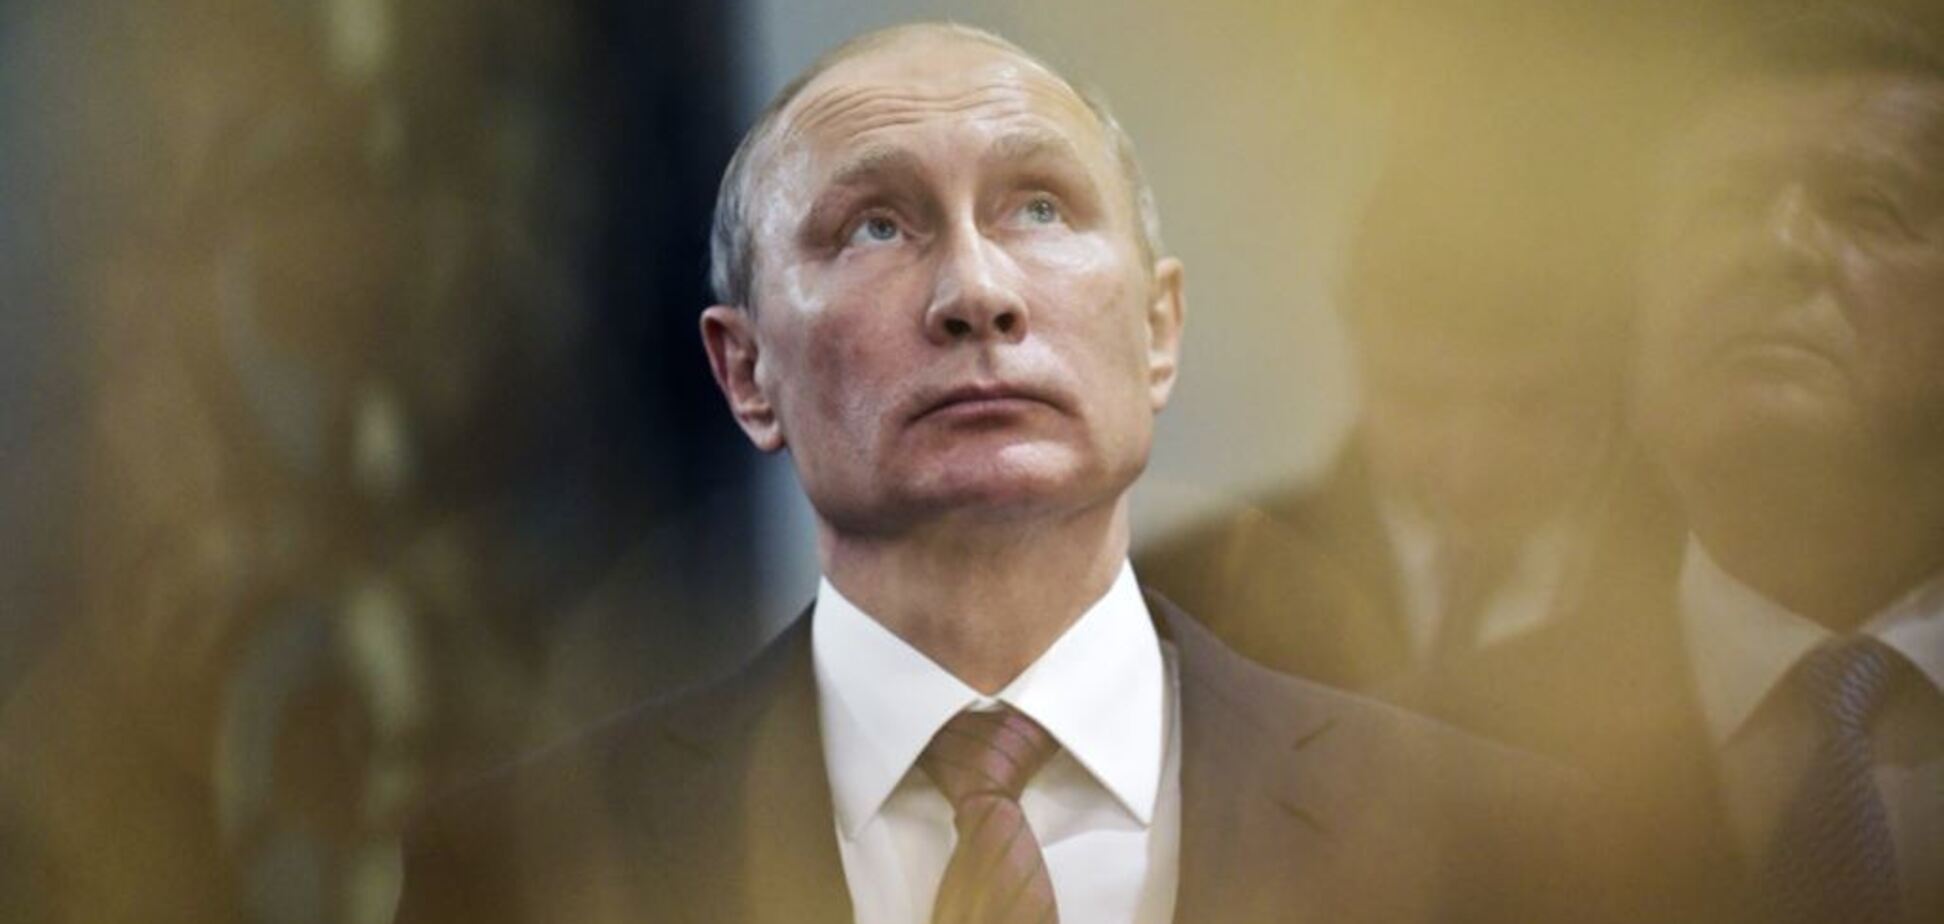 Белая обувь и свечка в руках: в сети всплыло мрачное фото с Путиным